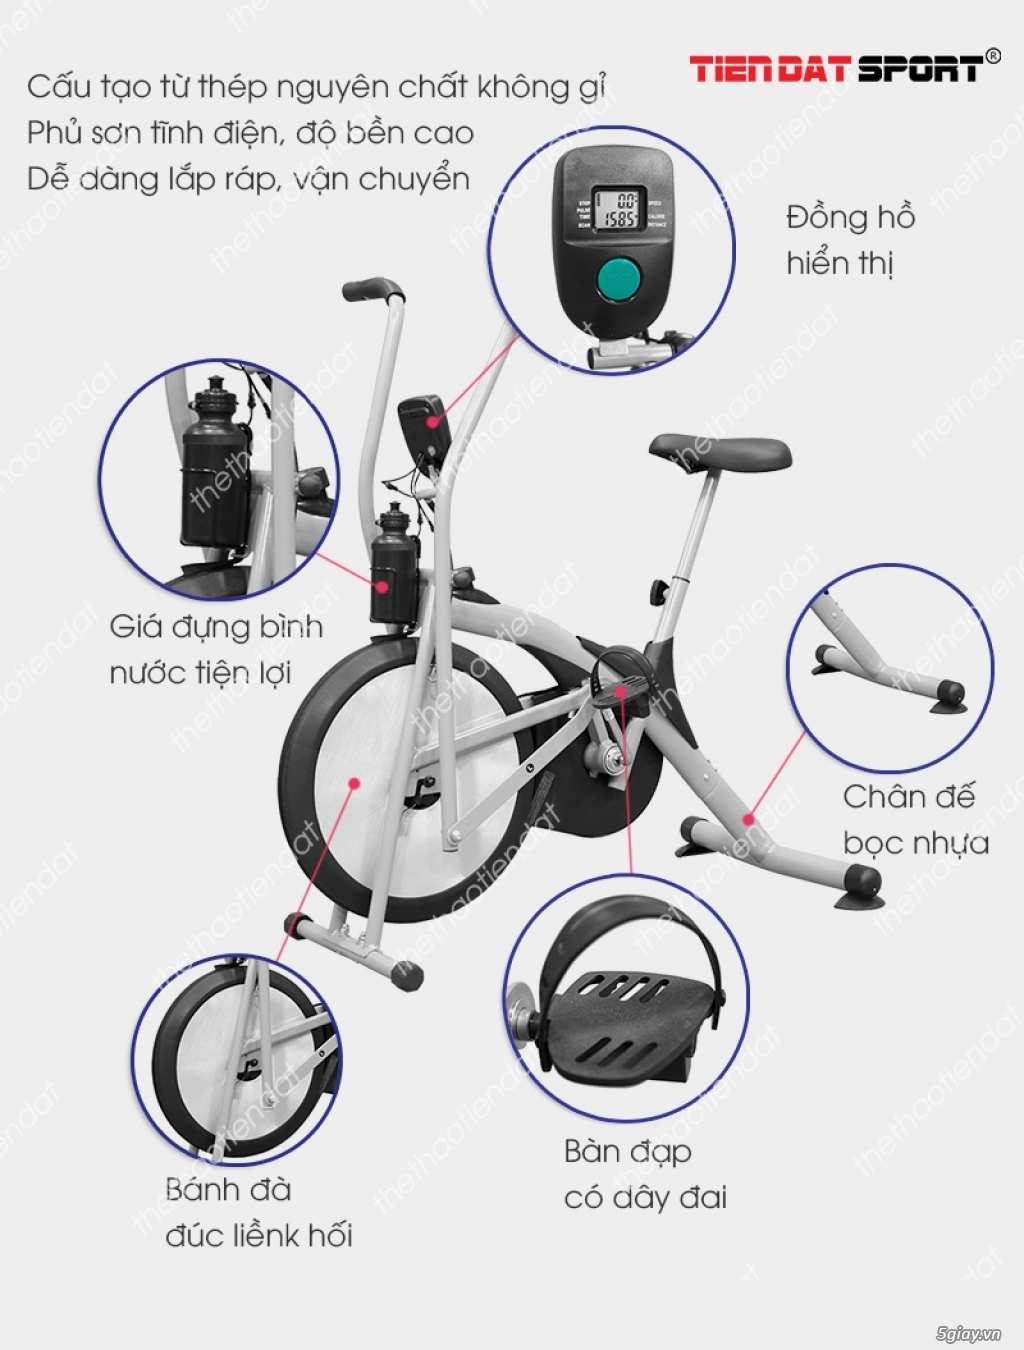 Xe đạp tập thể dục Air Bike Giá 1790000Đ thethaotiendat.com.vn - 1